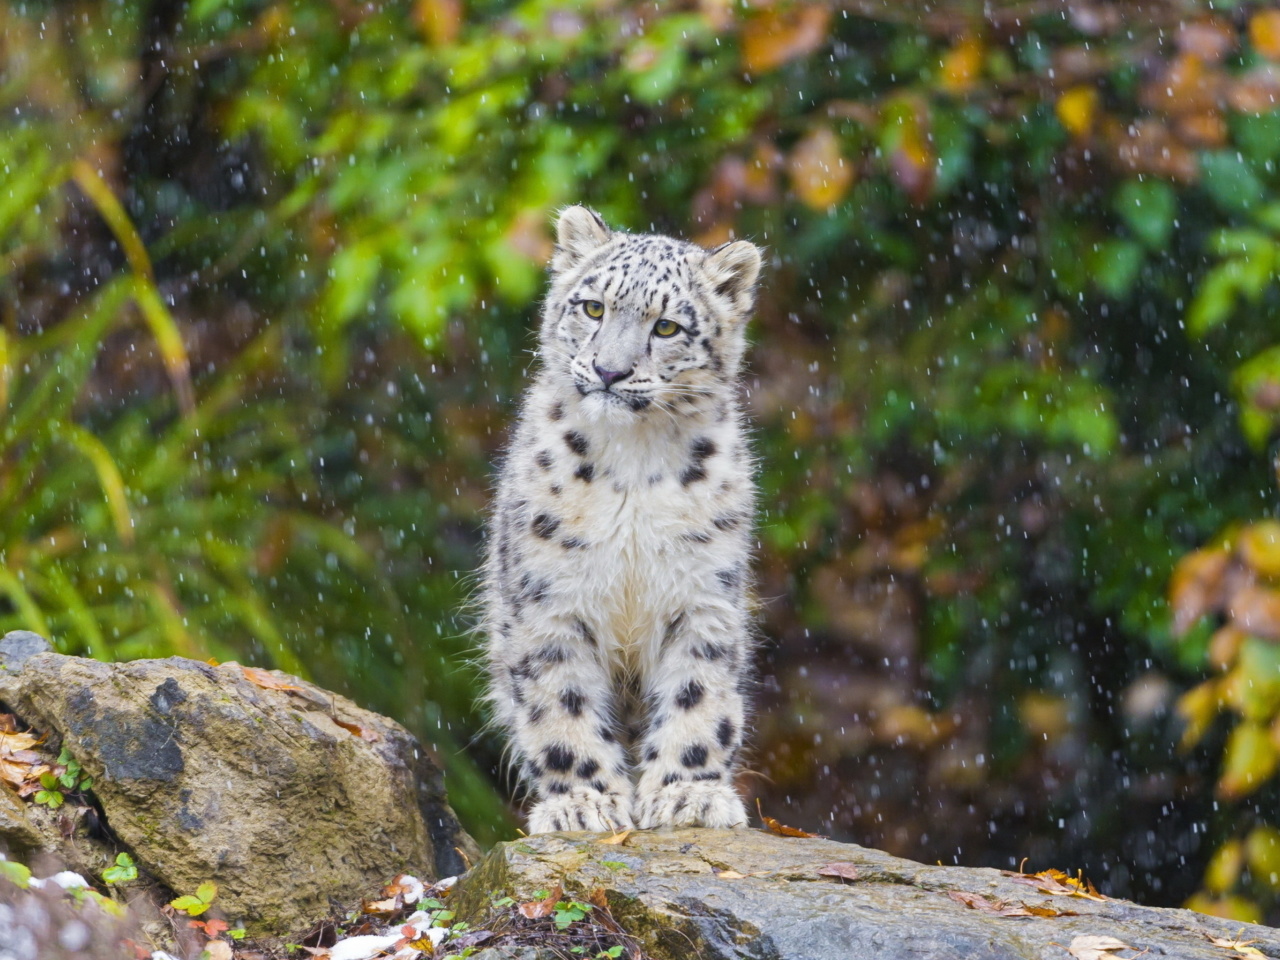 Snow Leopard in Zoo wallpaper 1280x960